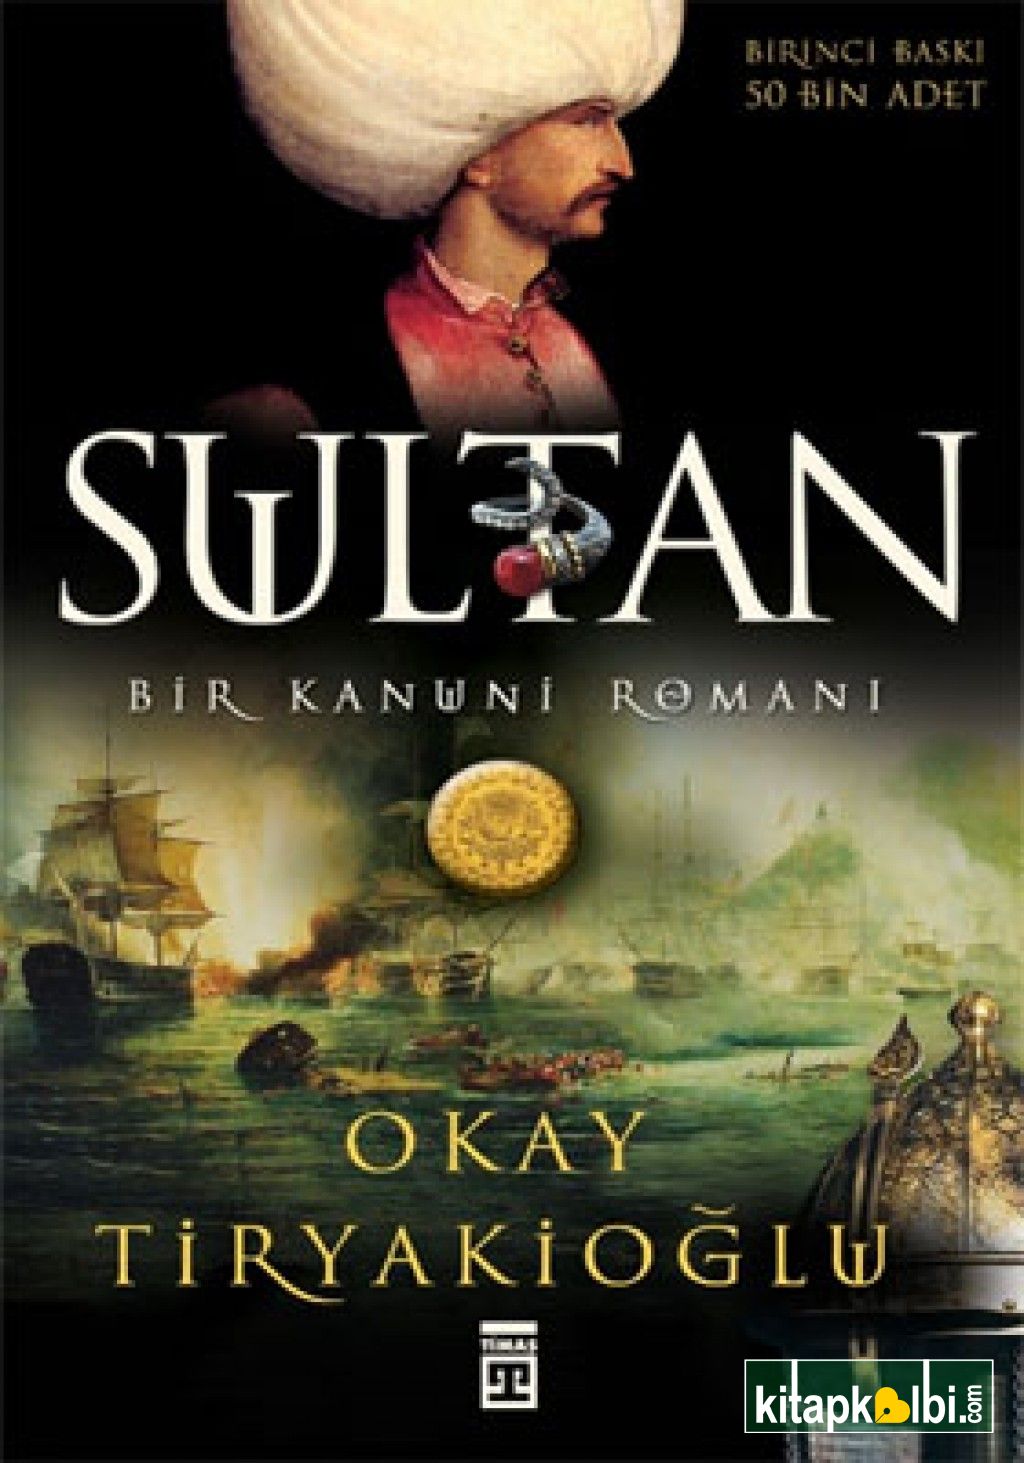 Sultan Bir Kanuni Romanı